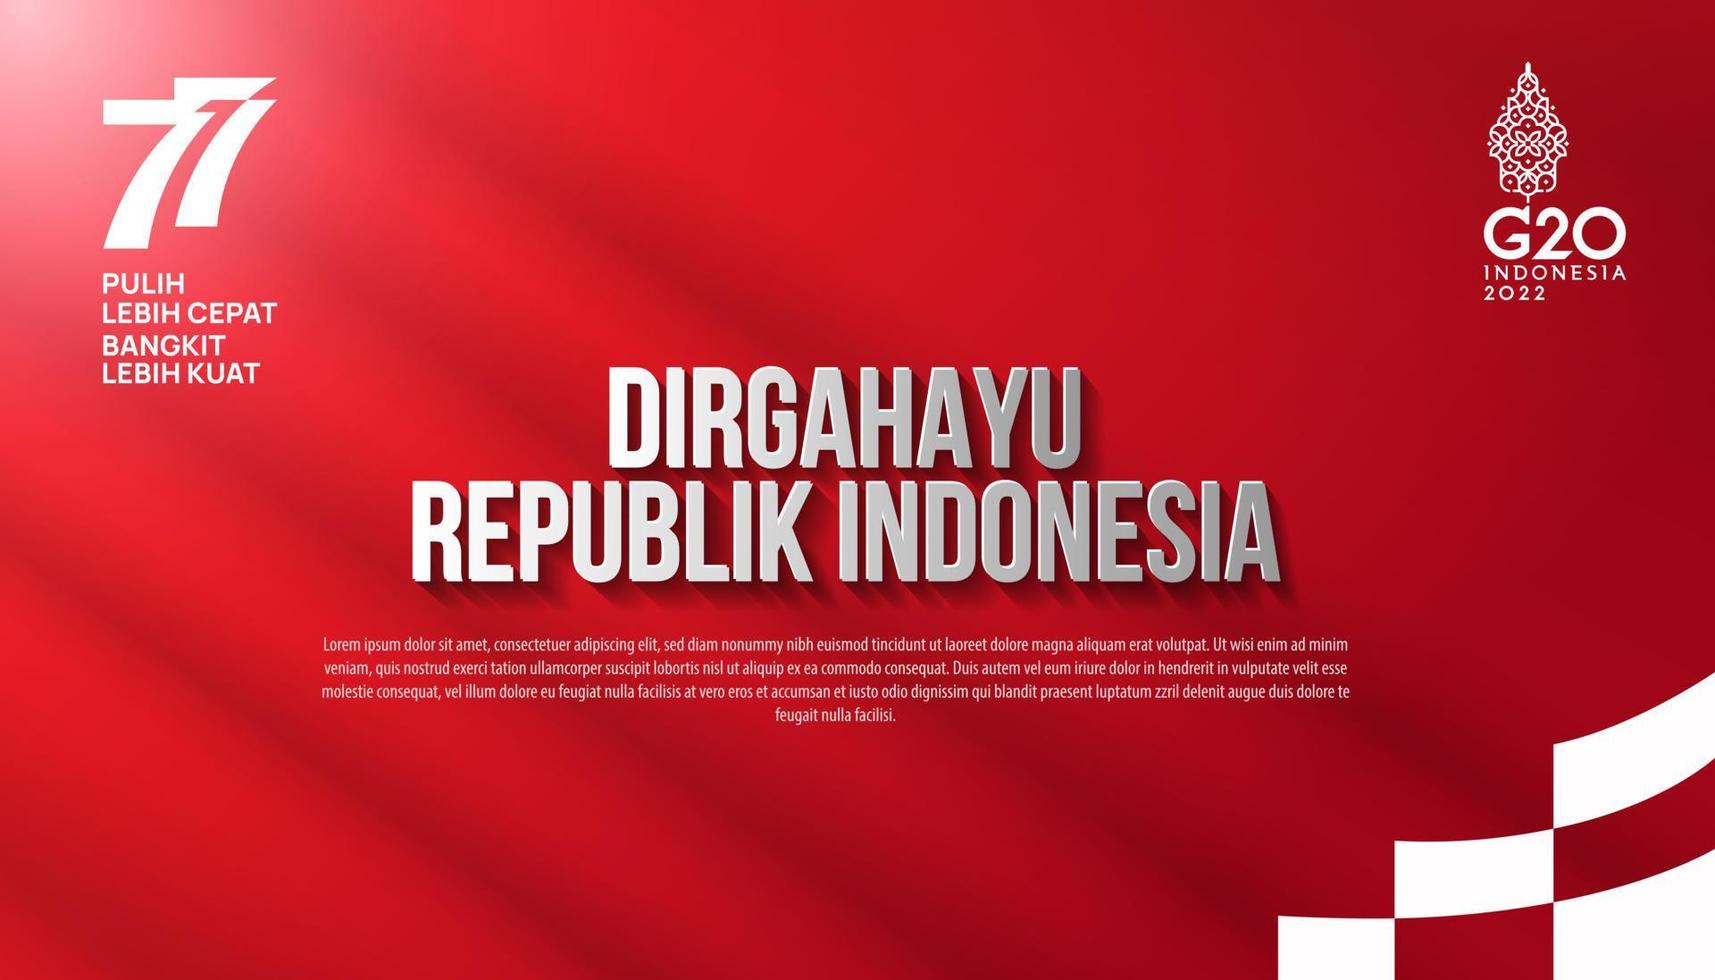 77e Indonesië. onafhankelijkheidsdag van de republiek indonesië. illustratie poster sjabloonontwerp vector